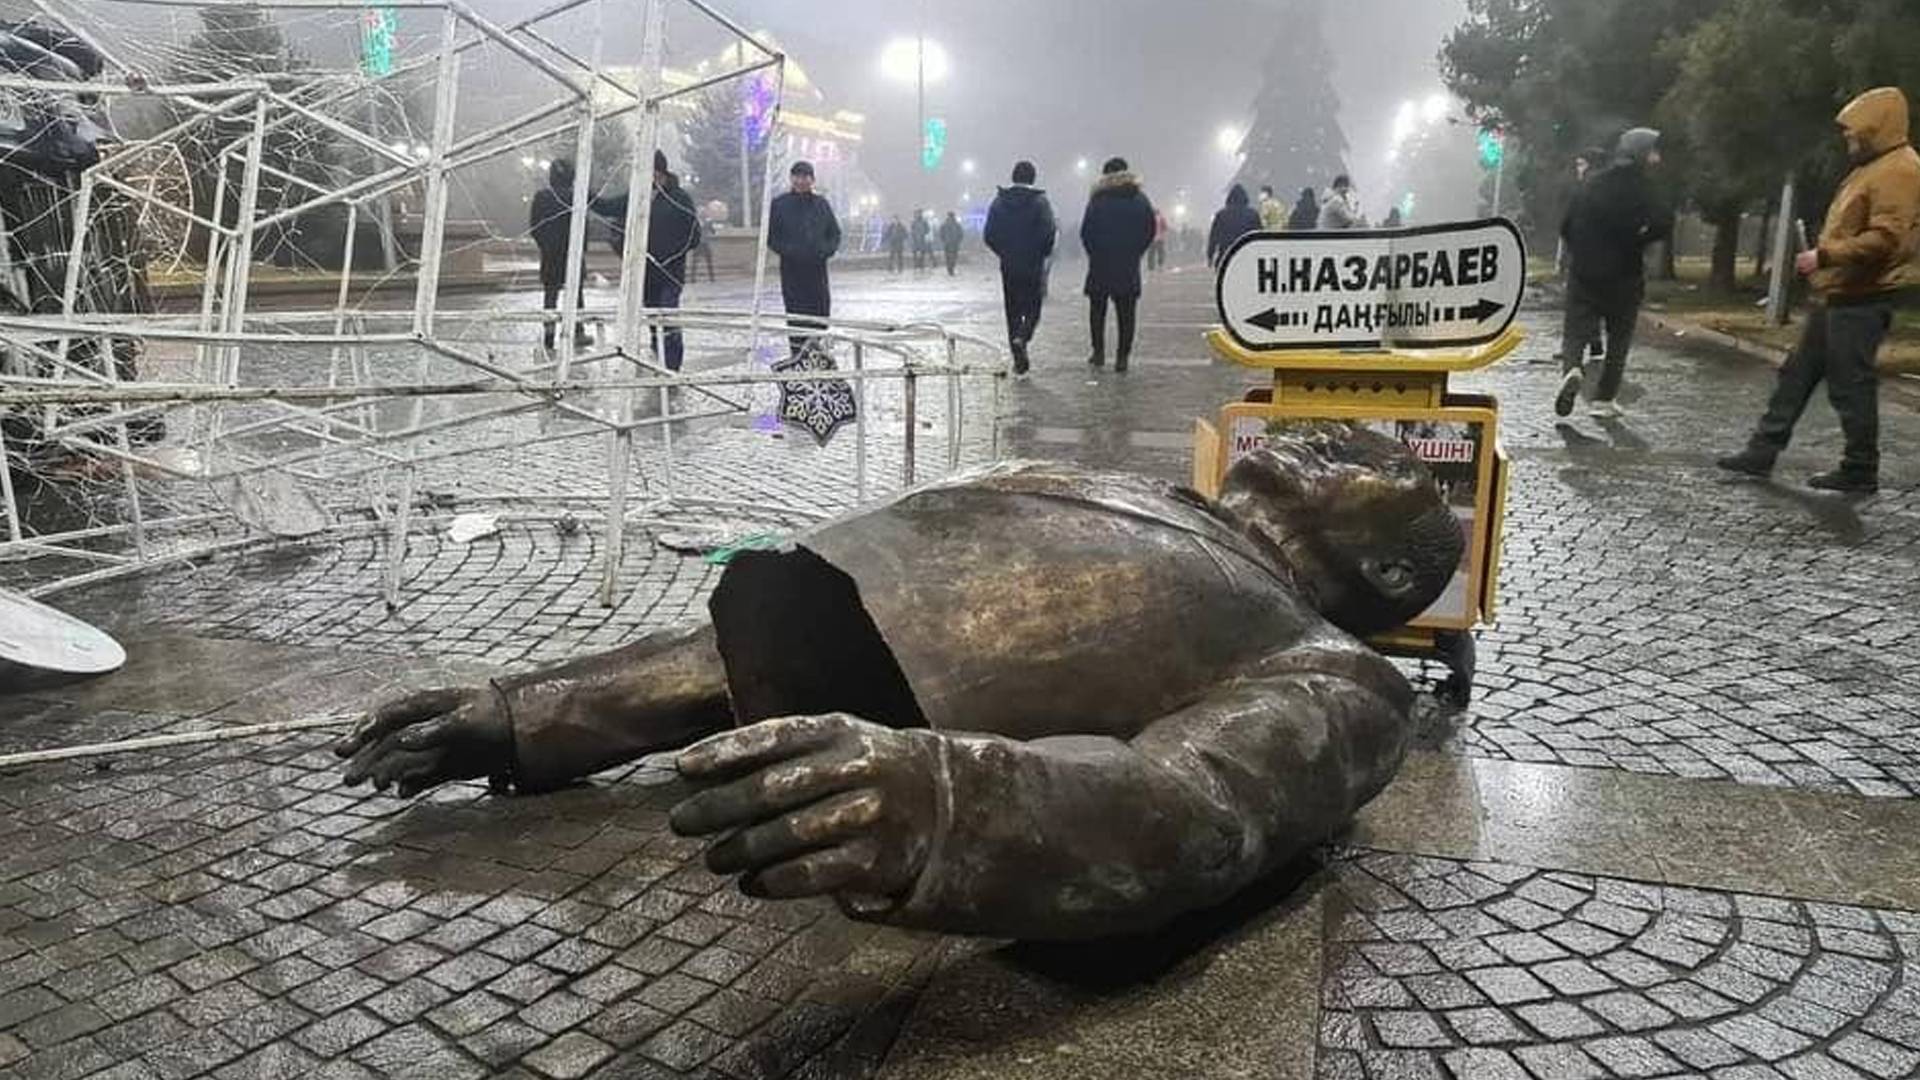 Kazachstan. Rozbity pomnik - popiersie Nazarbajewa - leży na ulicy